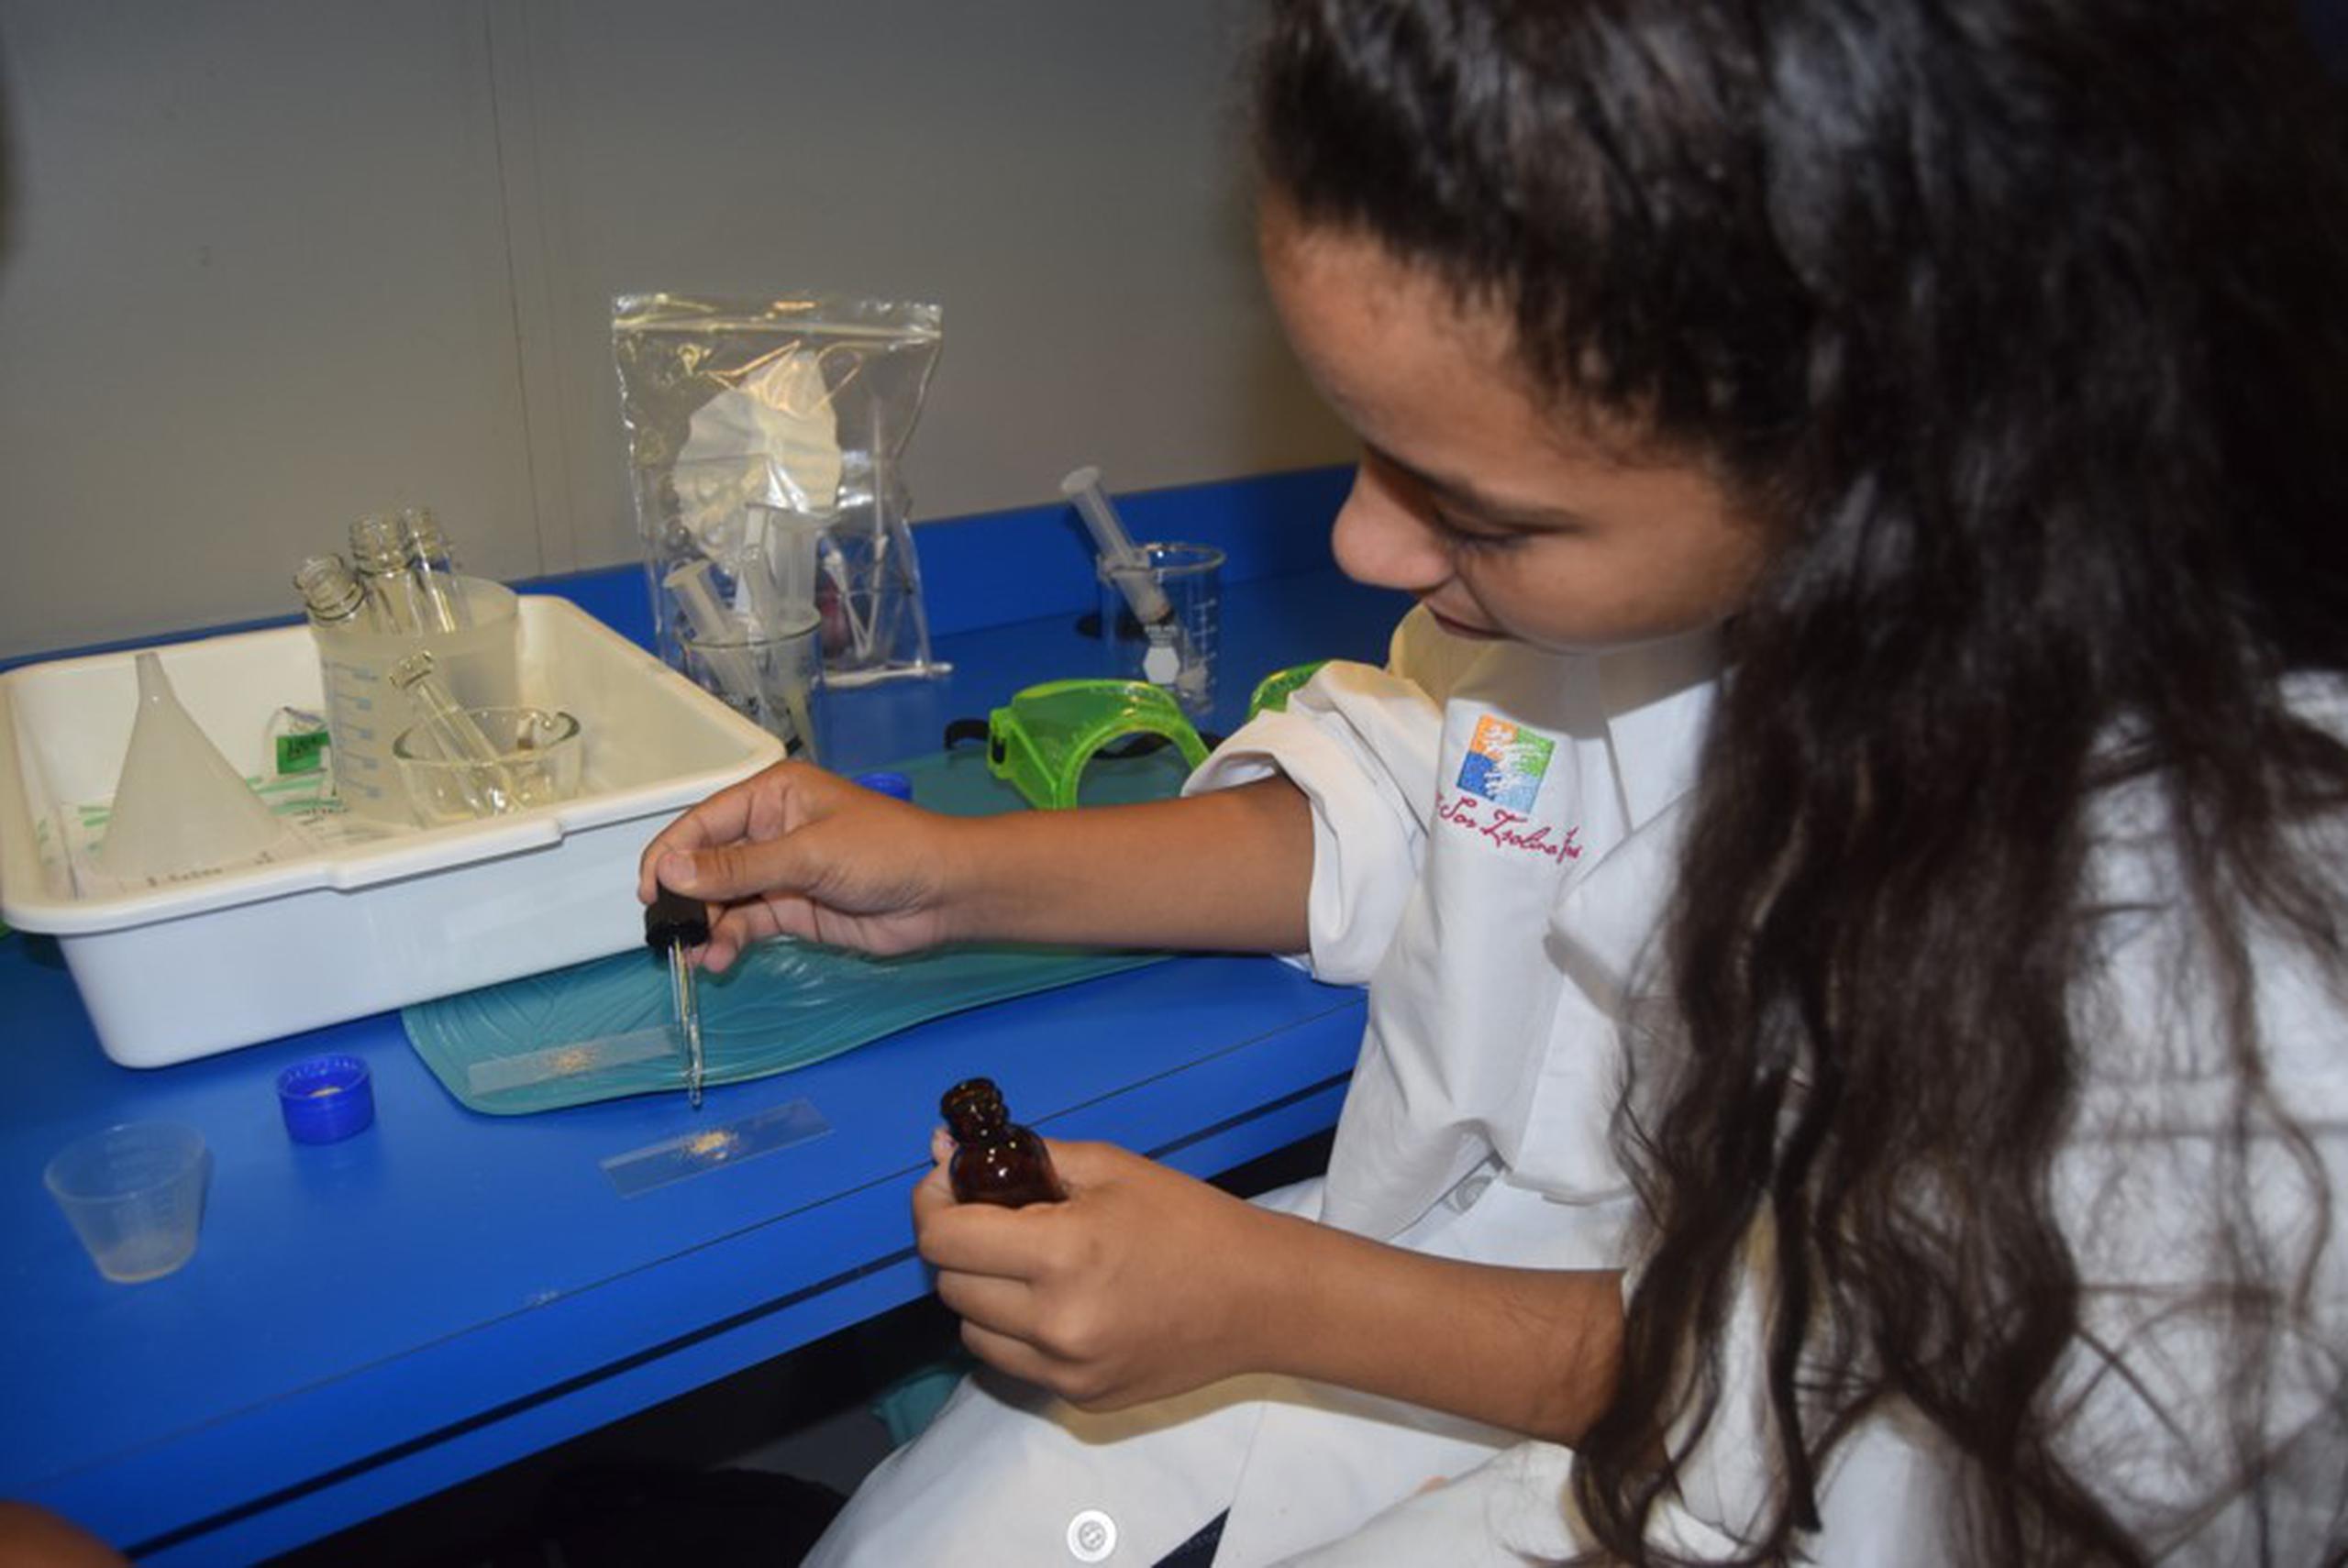 El laboratorio científico del programa educativo de Ciencia Móvil ha impactado a más de 1,300 estudiantes de escuelas públicas en comunidades de escasos recursos de diferentes municipios de alrededor de la Isla por los pasados cinco años.